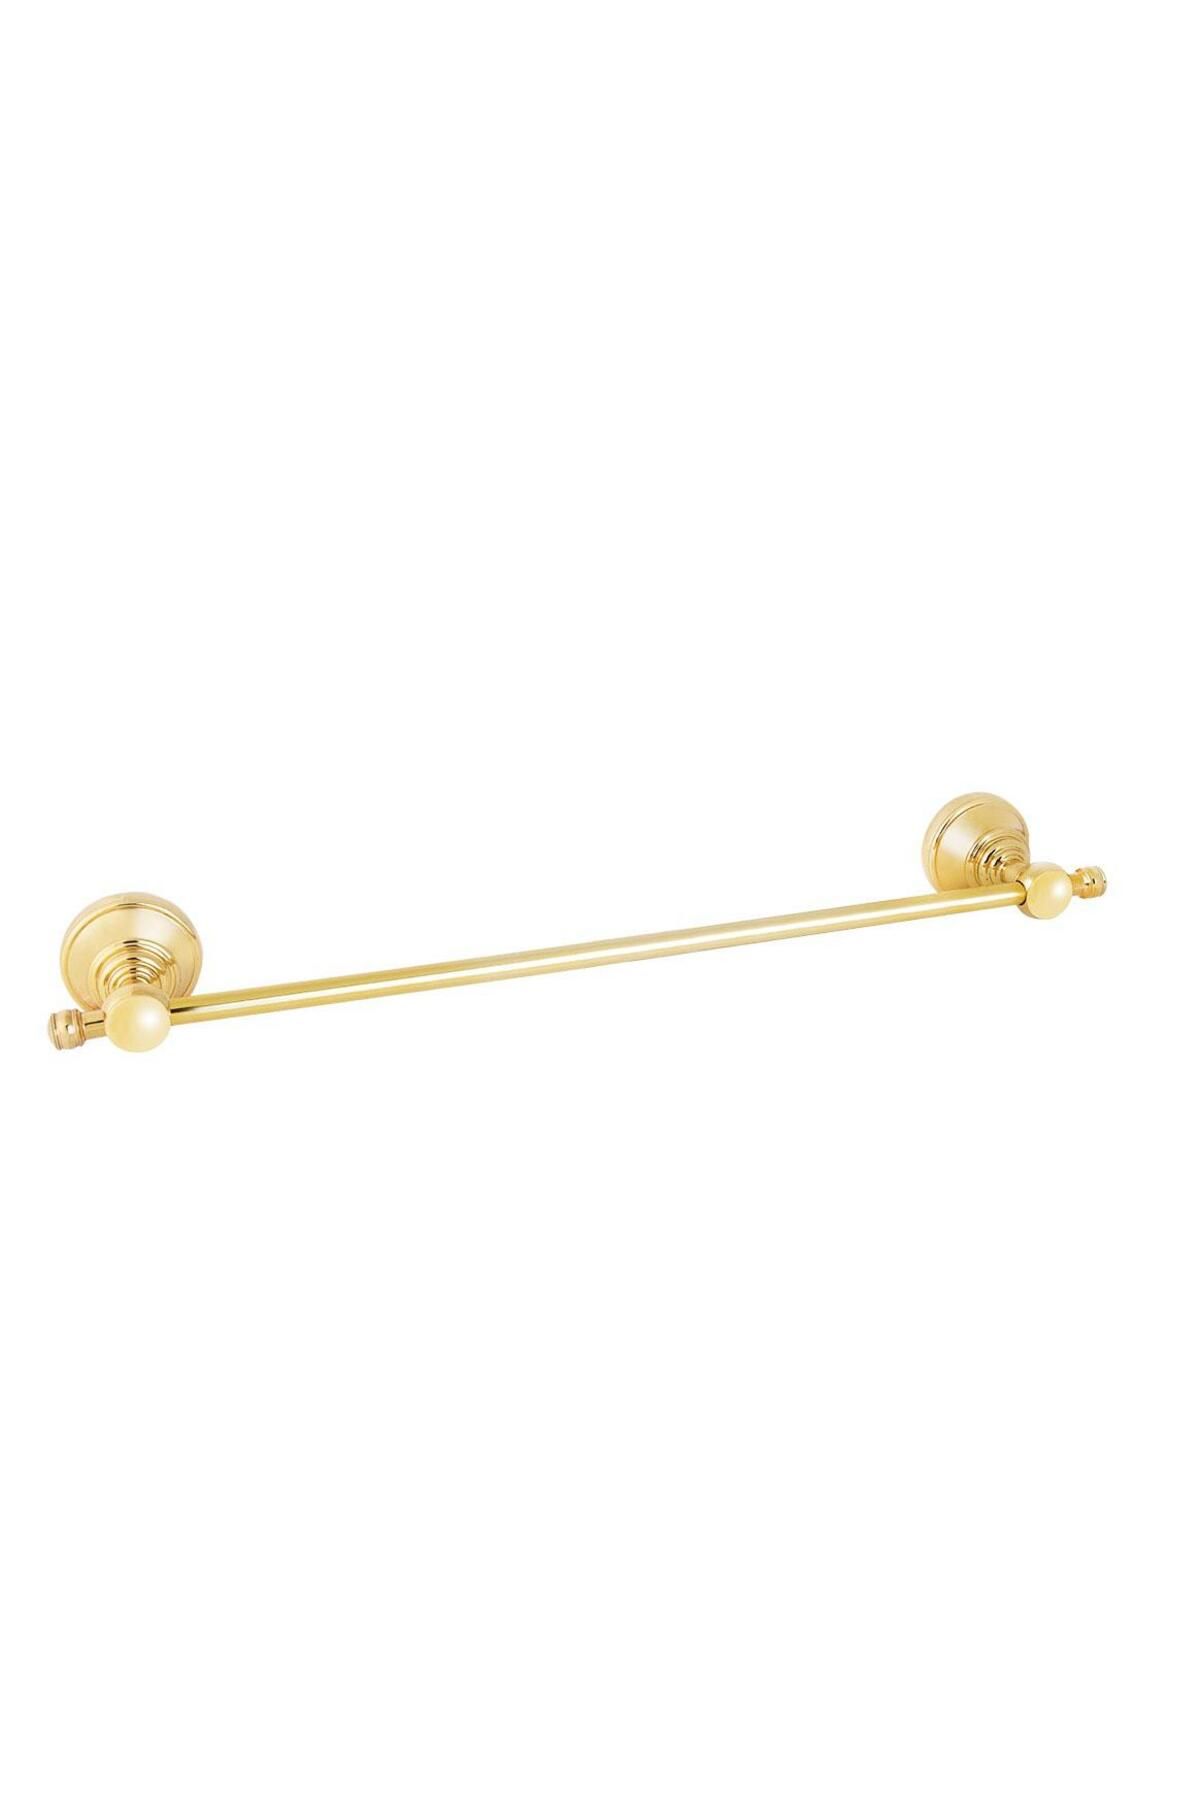 Eca Serel Luna Uzun Havluluk Banyo Askısı Altın Gold Paslanmaz- Pirinç 140110006A